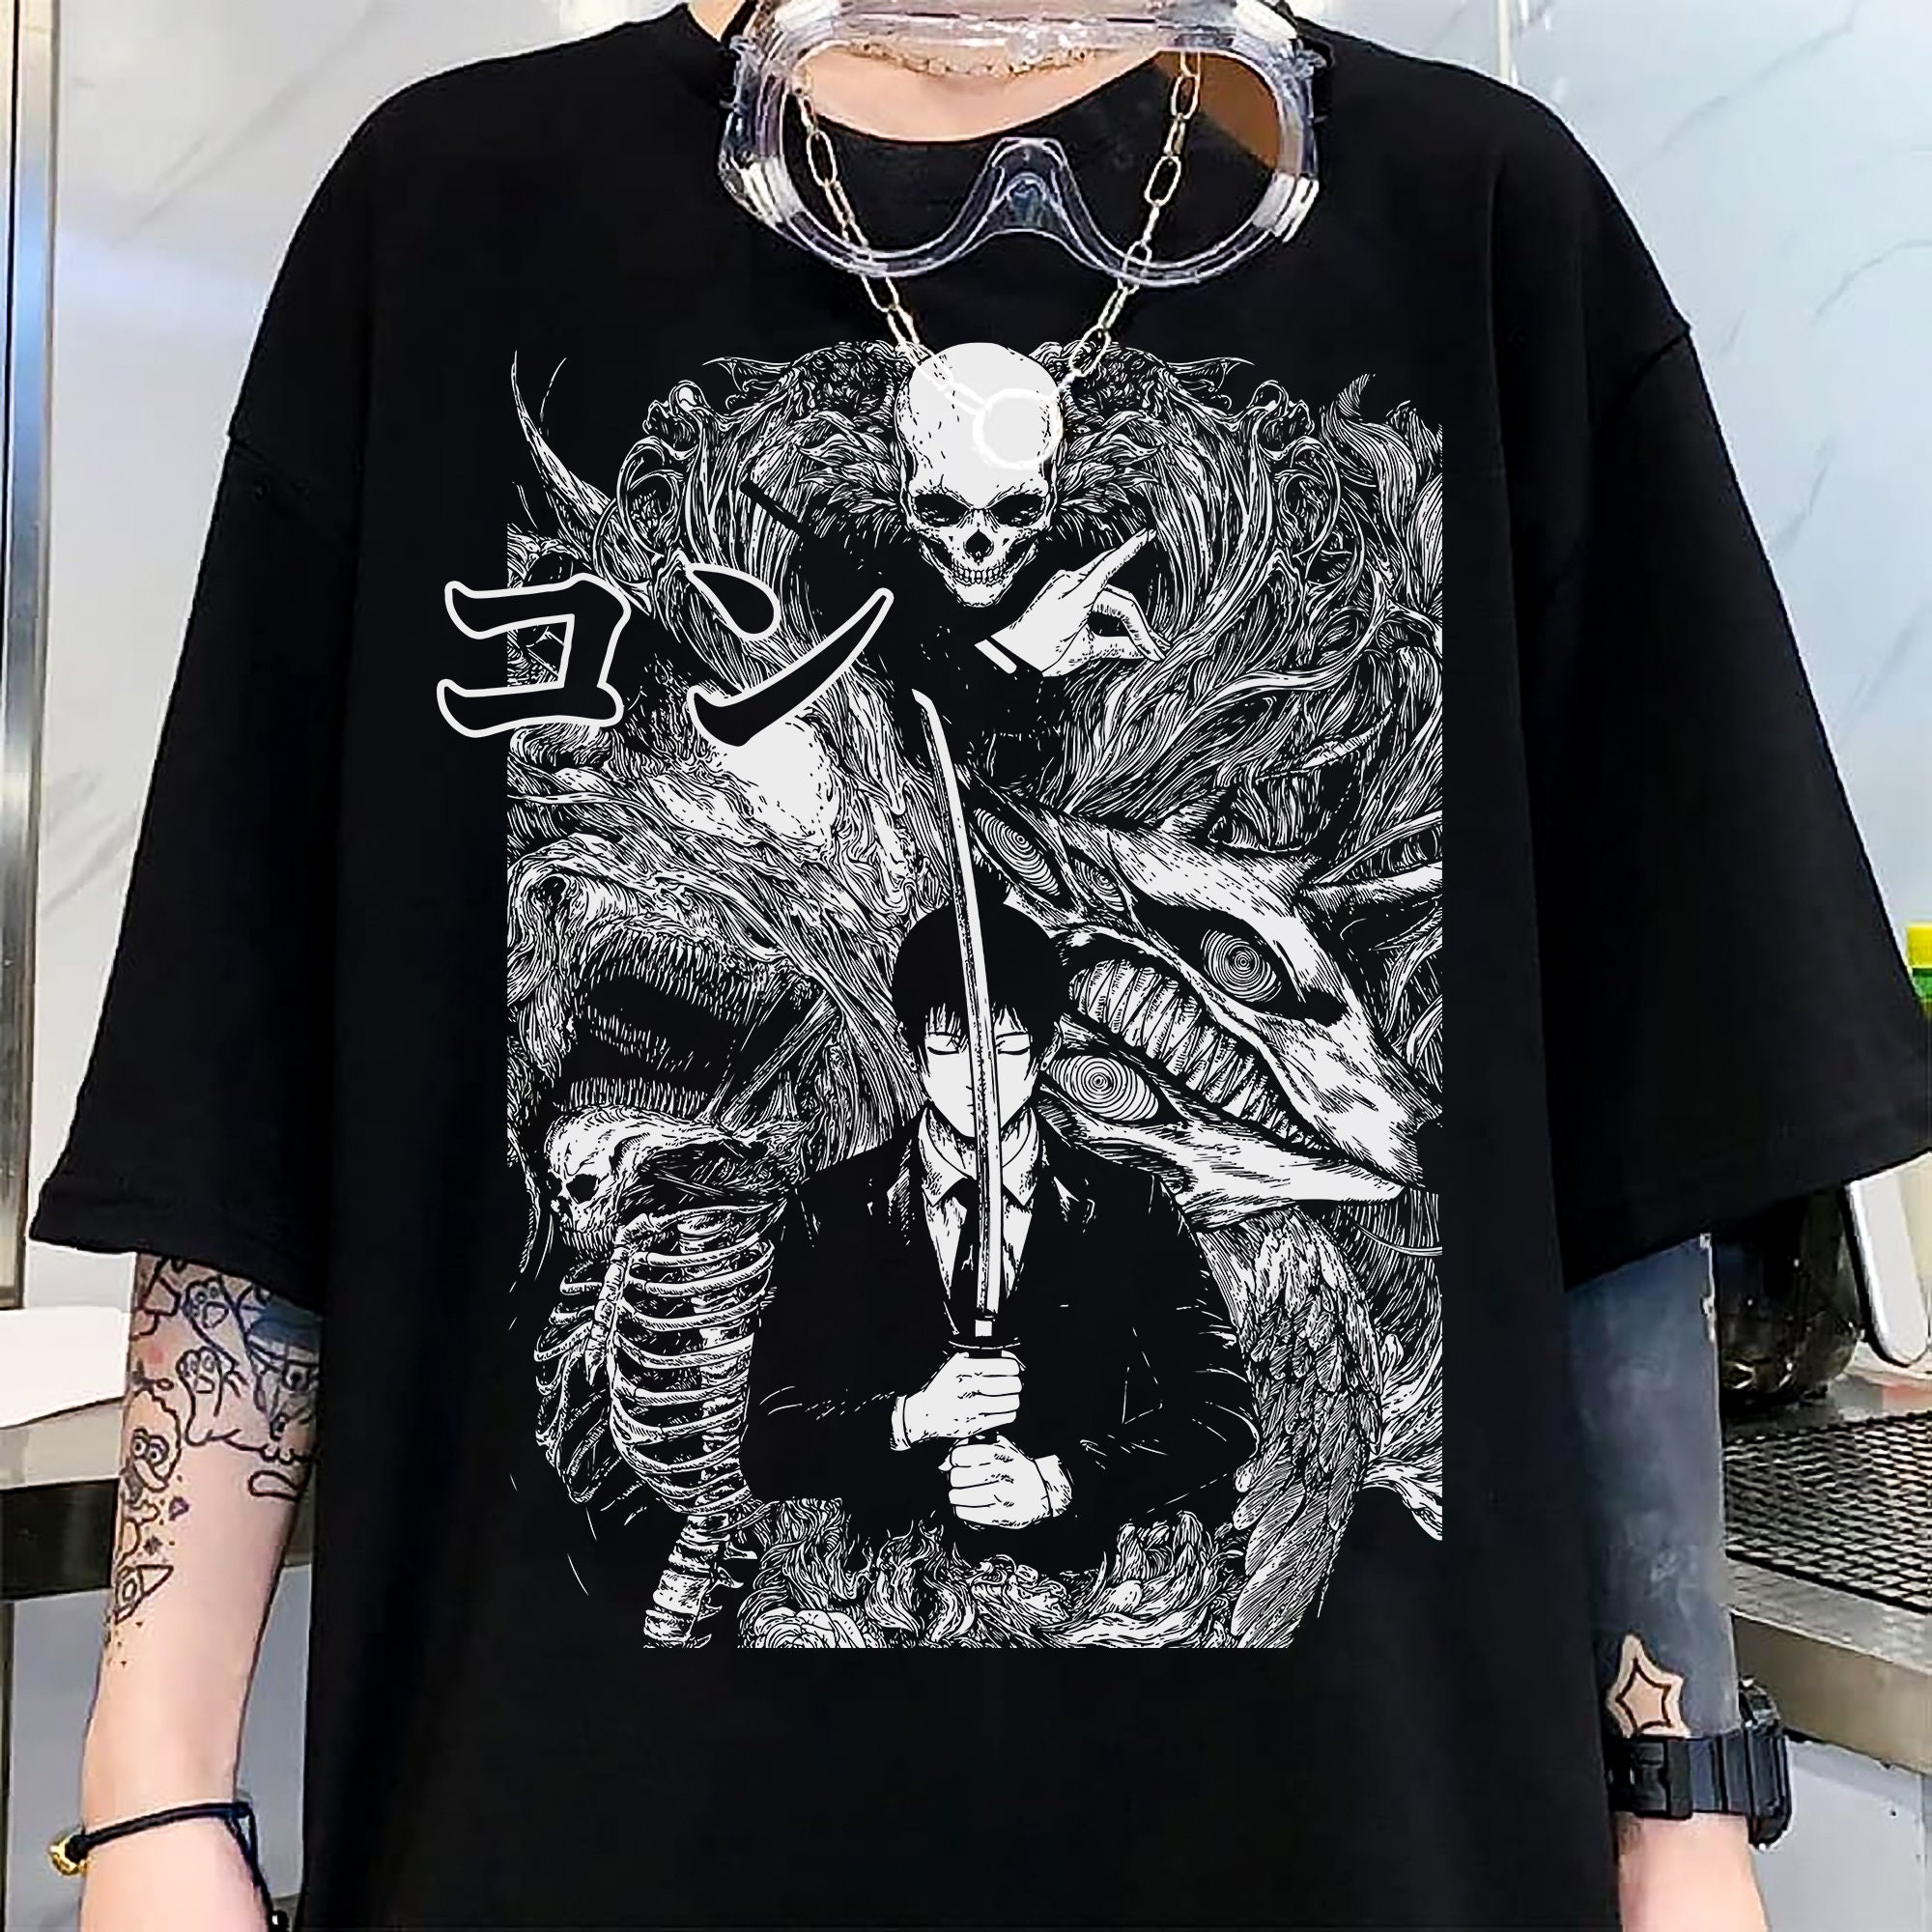 Chainsaw man Denji T-Shirt, Anime ,Aki Hayakawa Kon Chainsaw Man Shirt